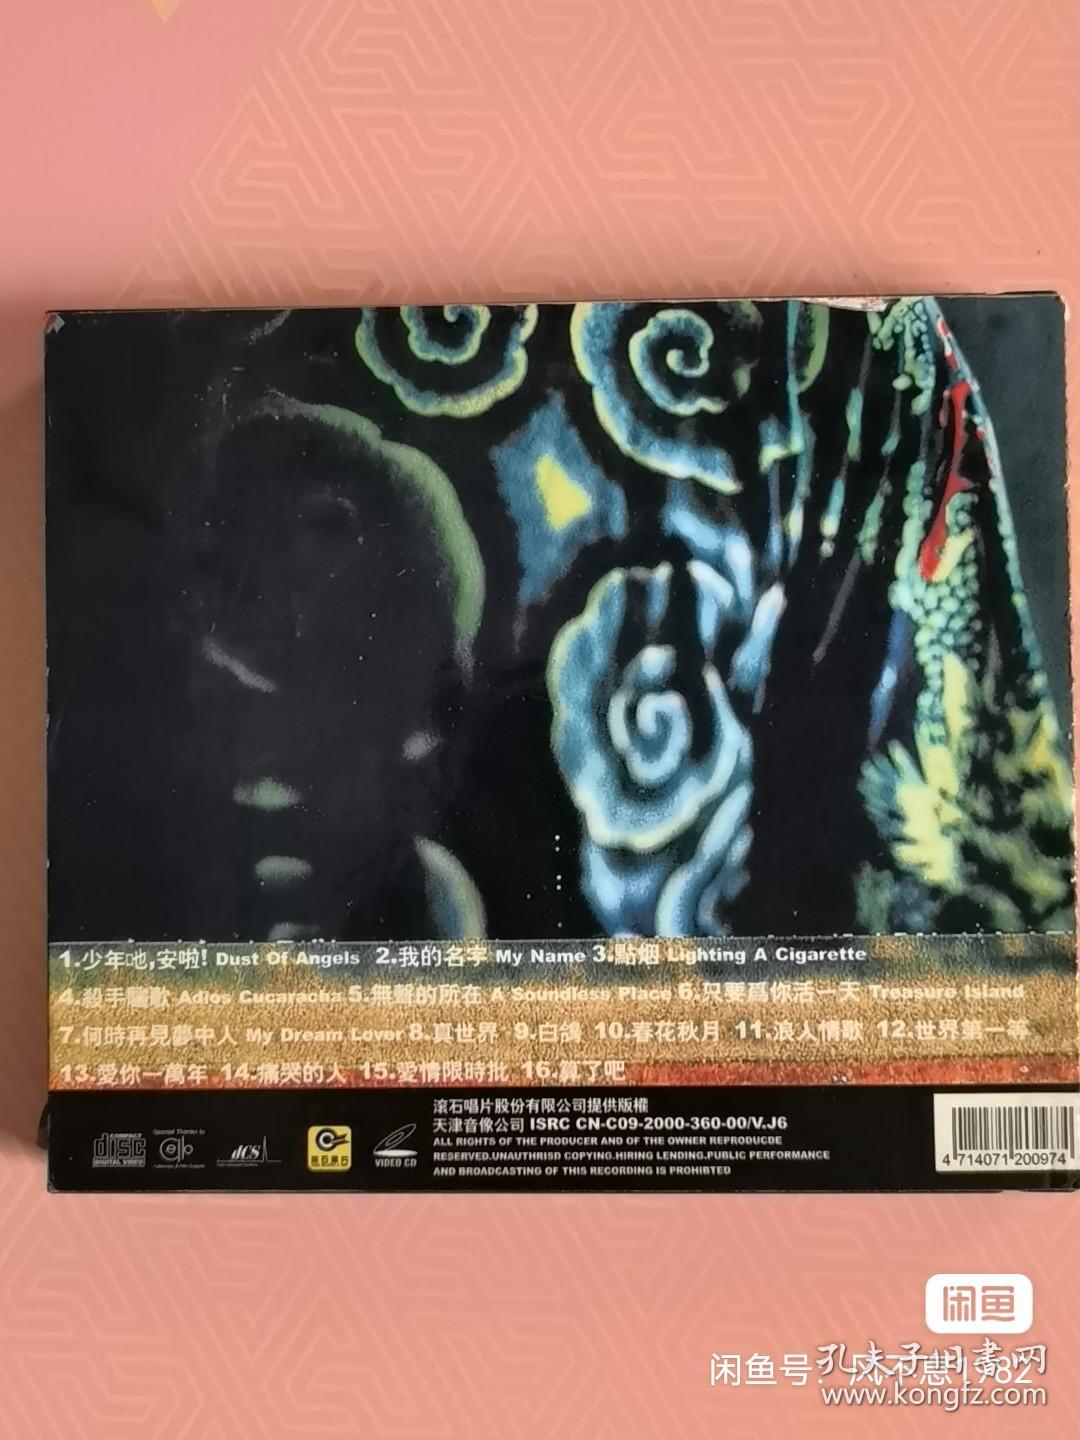 伍佰 电影歌曲典藏 1992-2000 VCD